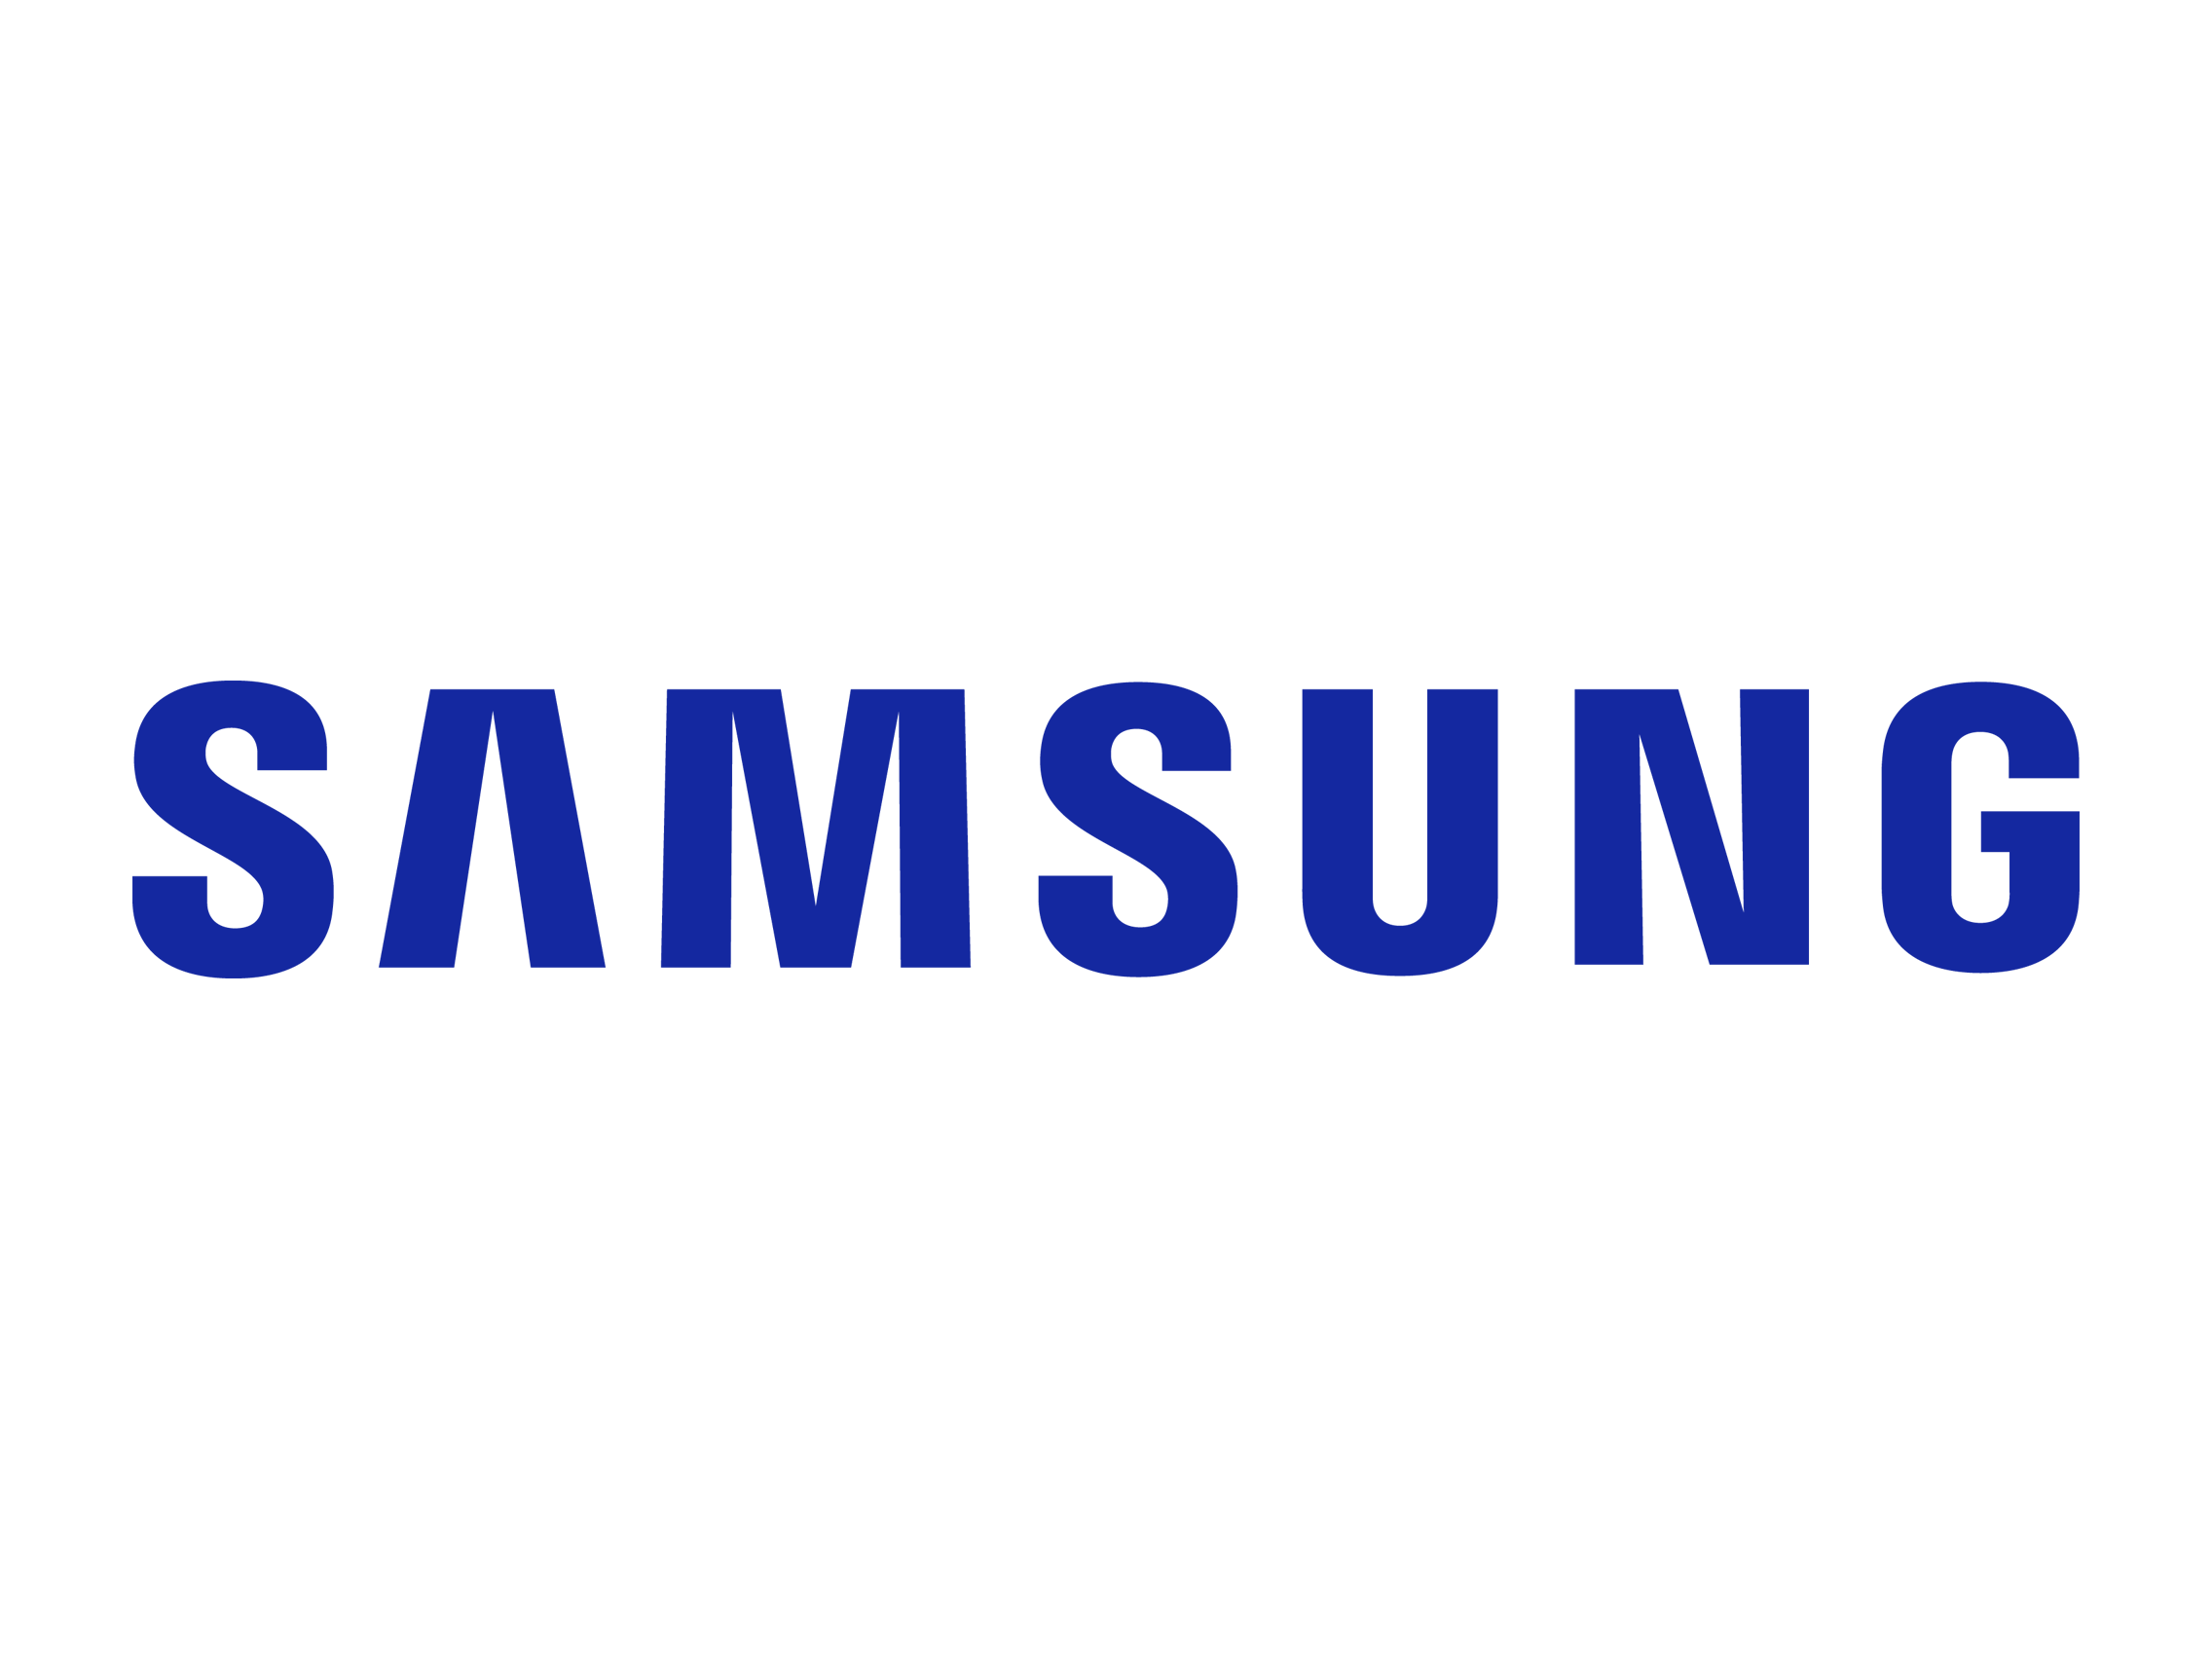 Samsung Galaxy S7 Edge Logo - Samsung Galaxy S7 + S7 Edge - Release Date 11/03/2016 - Legal TX